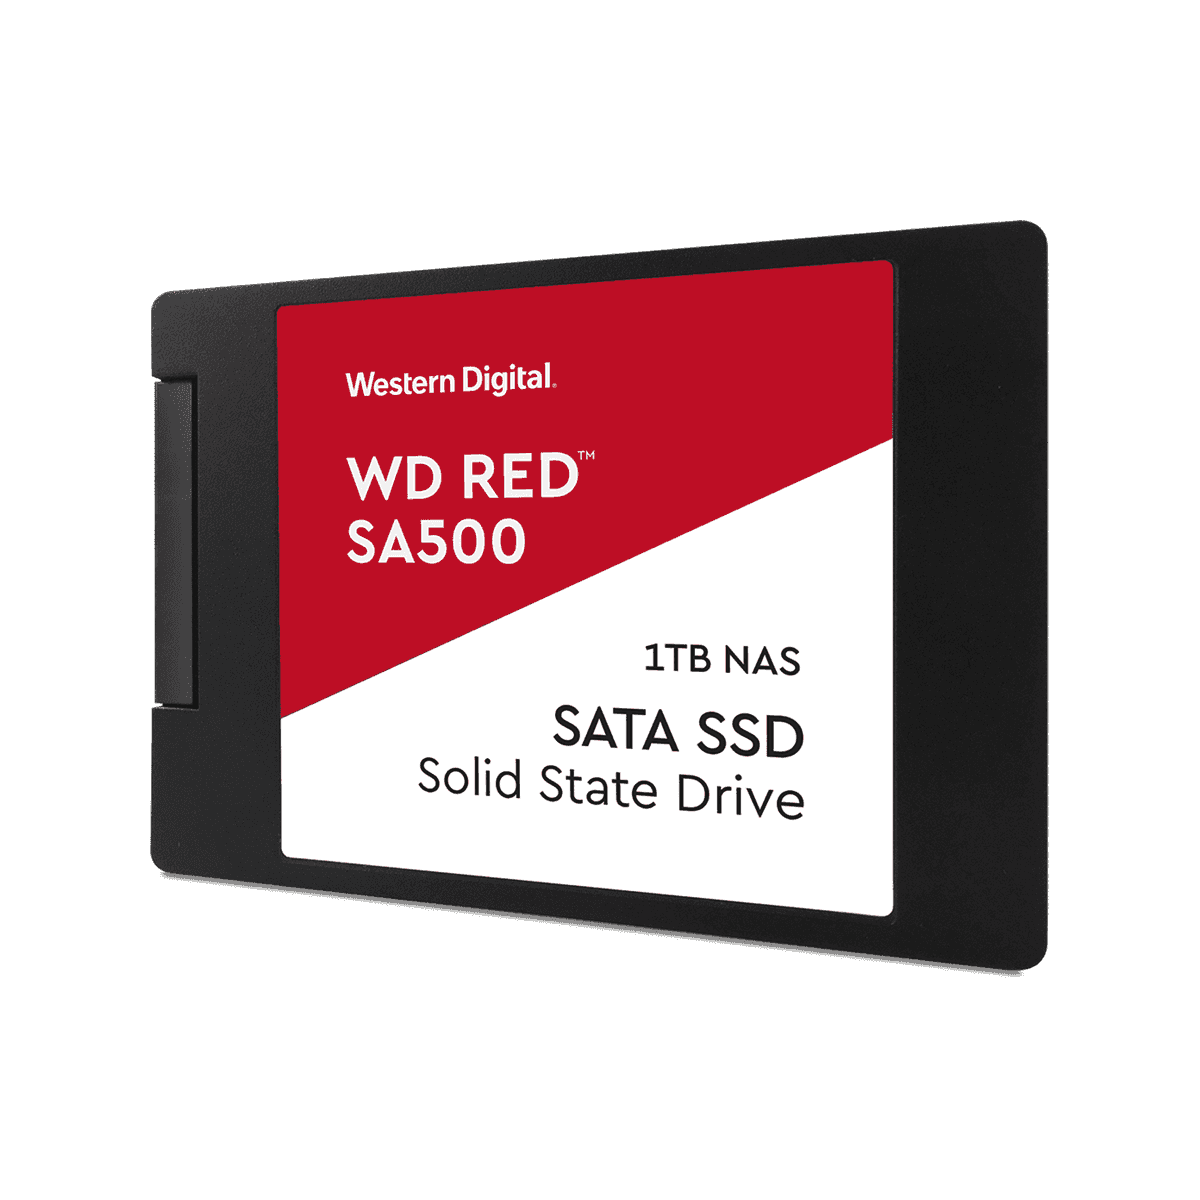 WD red SA500 SATA SSD 1tbx2